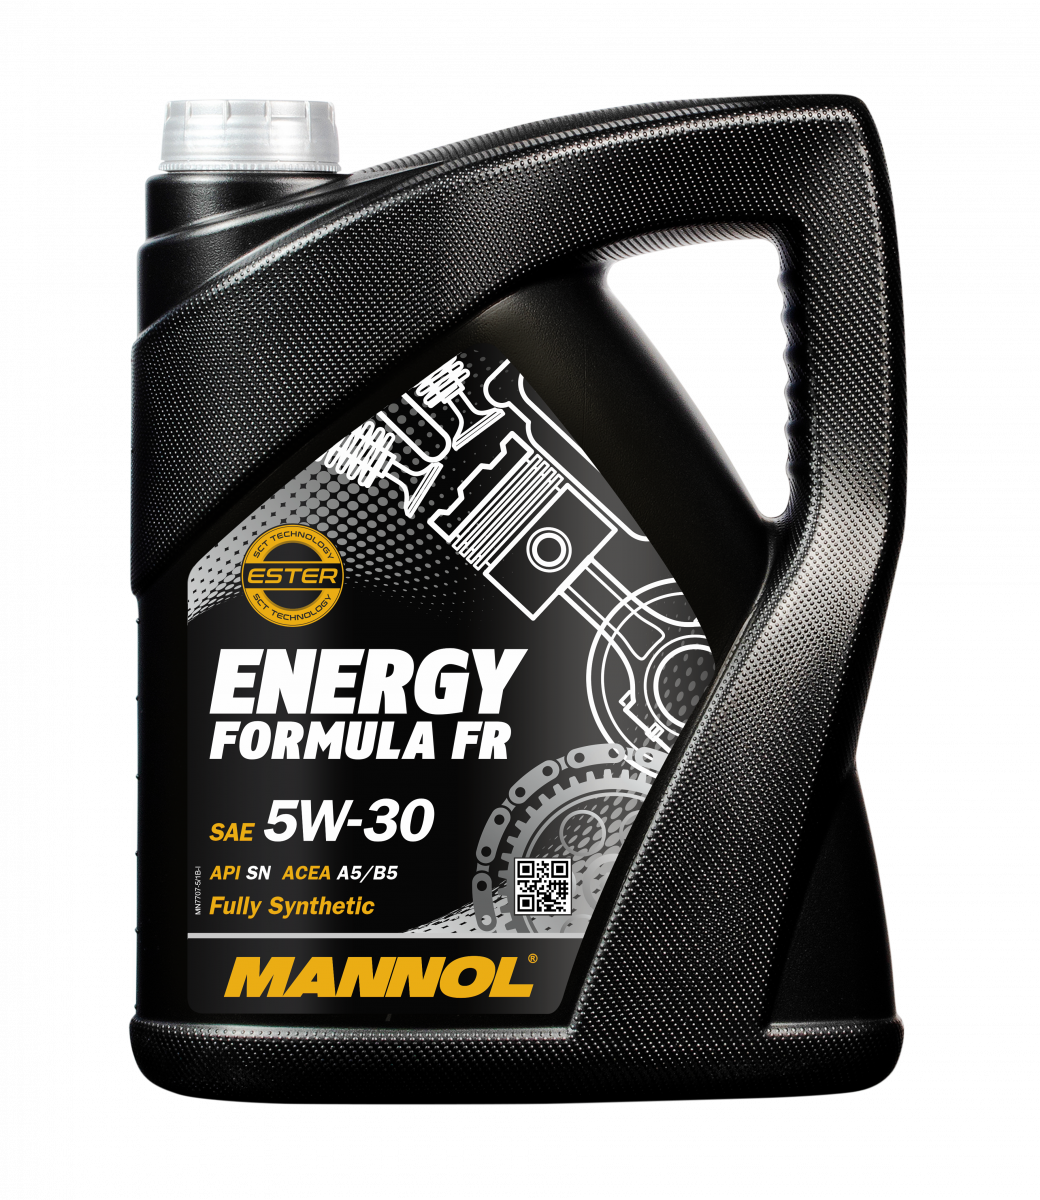 MANNOL Energy Formula FR 5W-30 7707